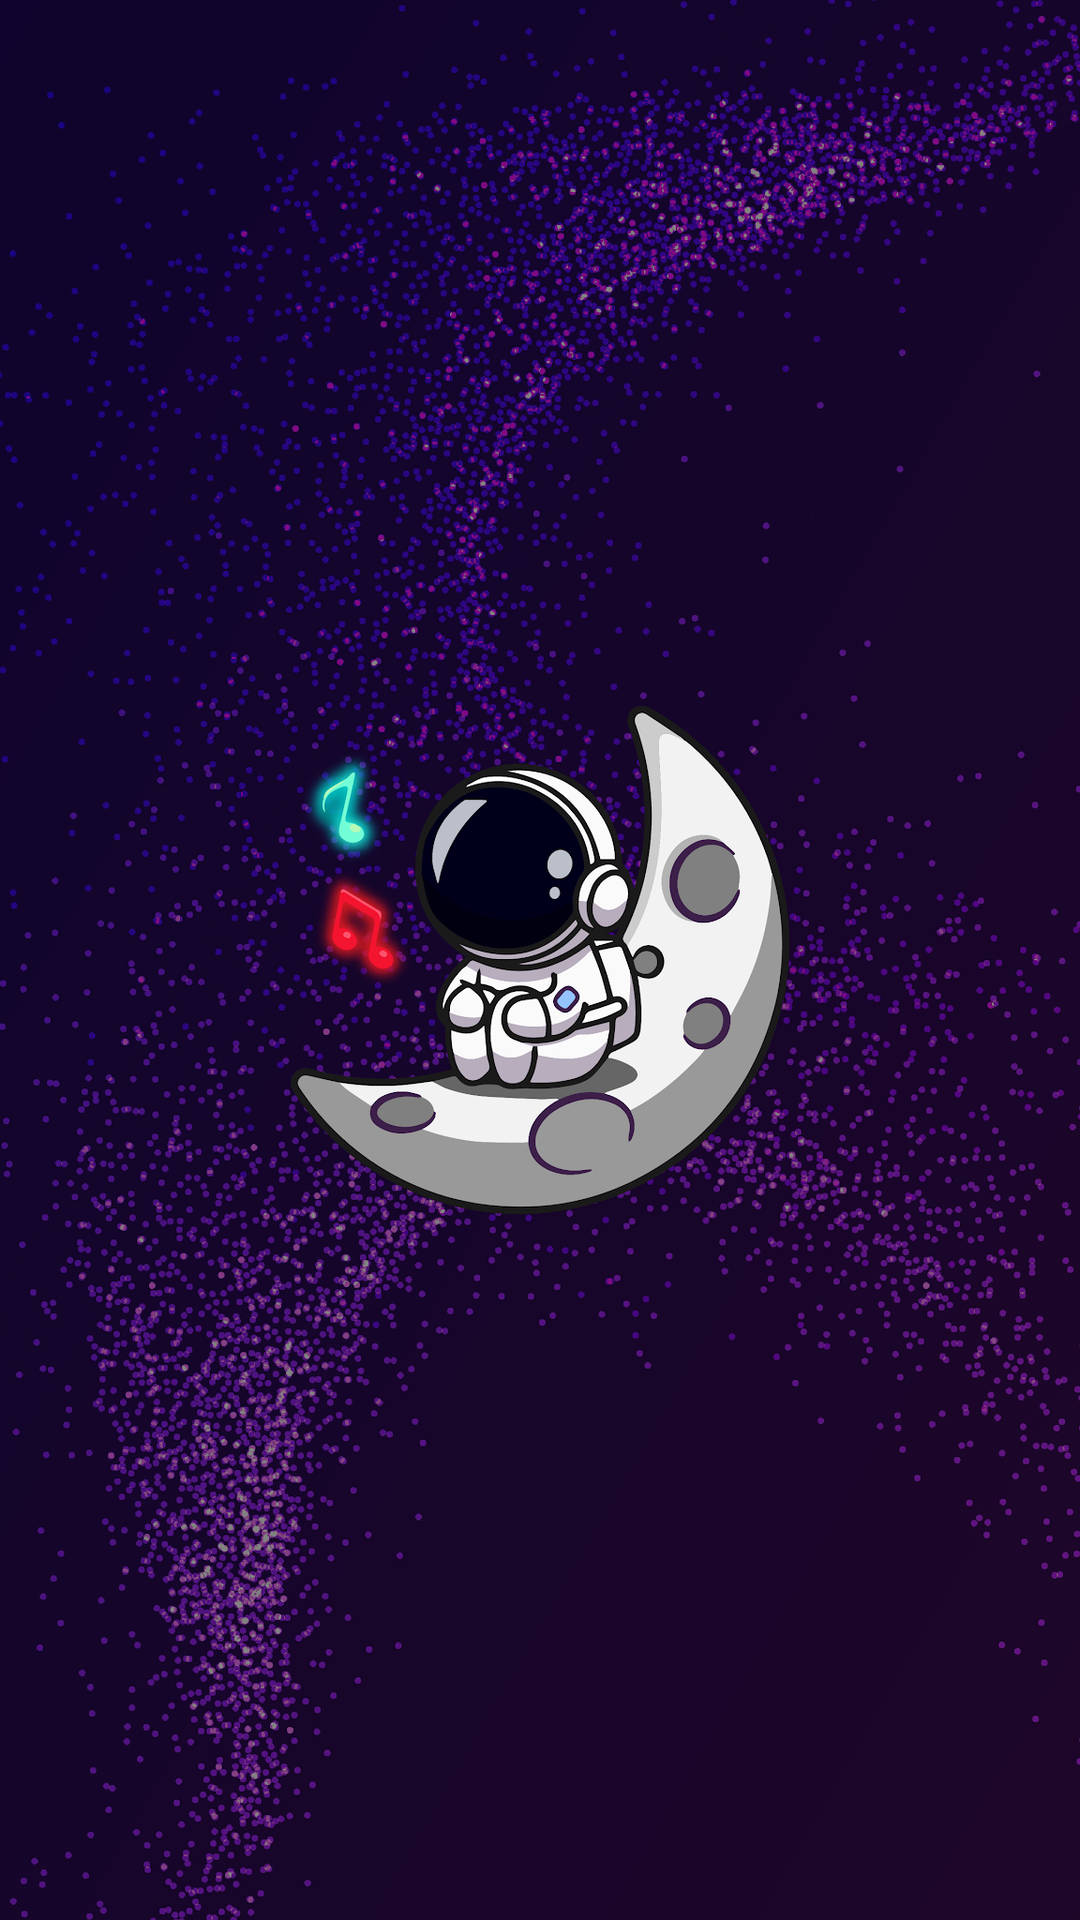 Cartoon Astronaut Singing On The Moon